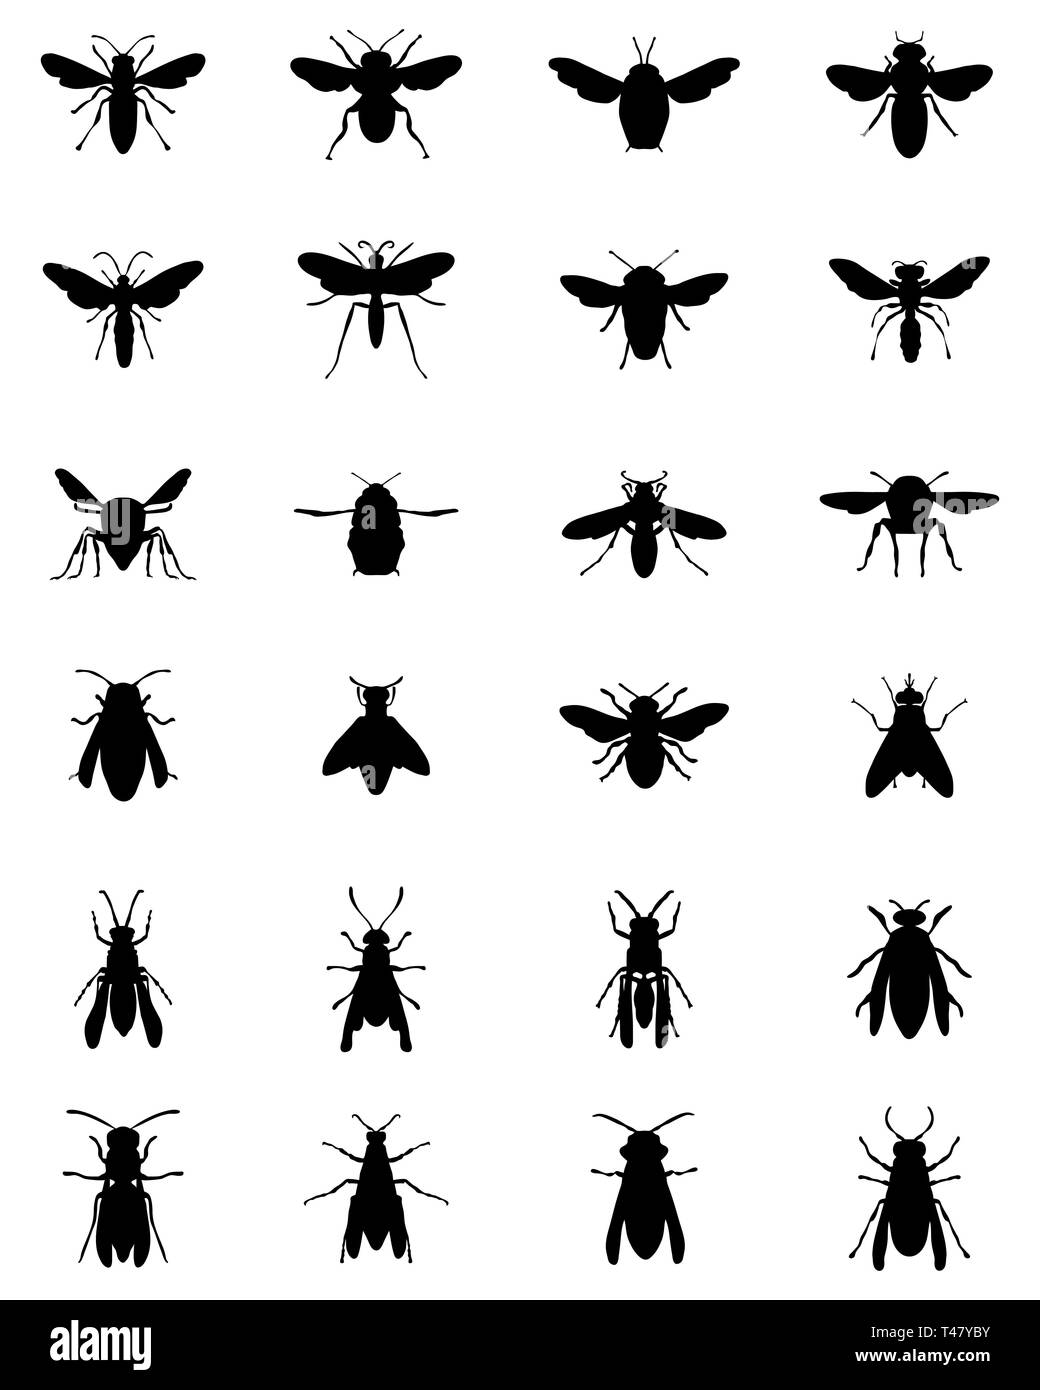 Silhouettes noires des abeilles et guêpes sur un fond blanc Banque D'Images